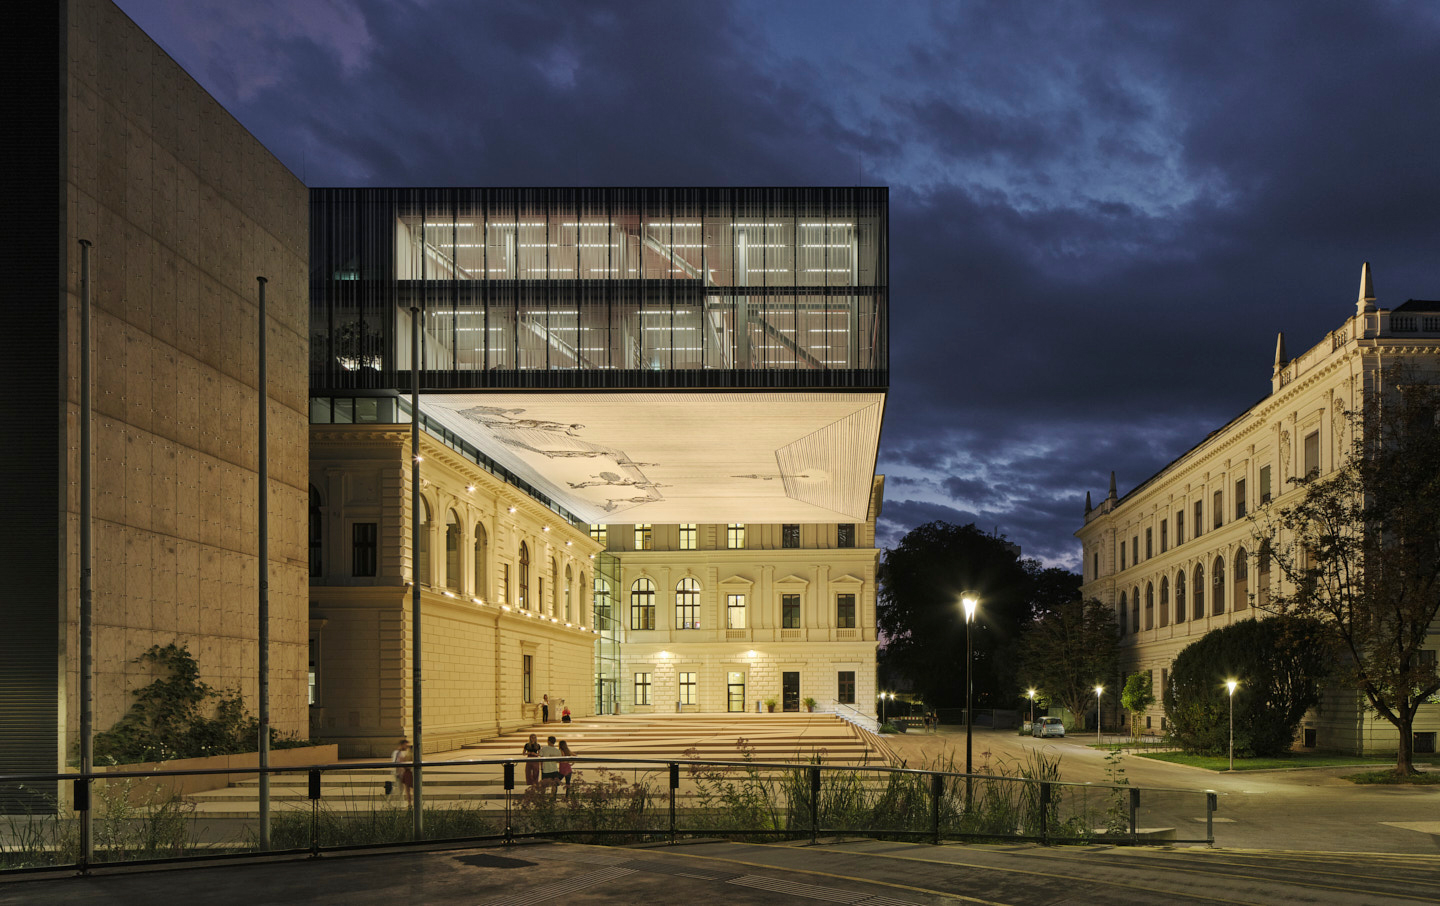 Nach einem Jahr Corona-Pause startet die Lange Nacht der Museen wieder voll durch. Die Uni Graz zeigt erstmals die neue Universitätsbibliothek. Foto: BIG/David Schreyer 